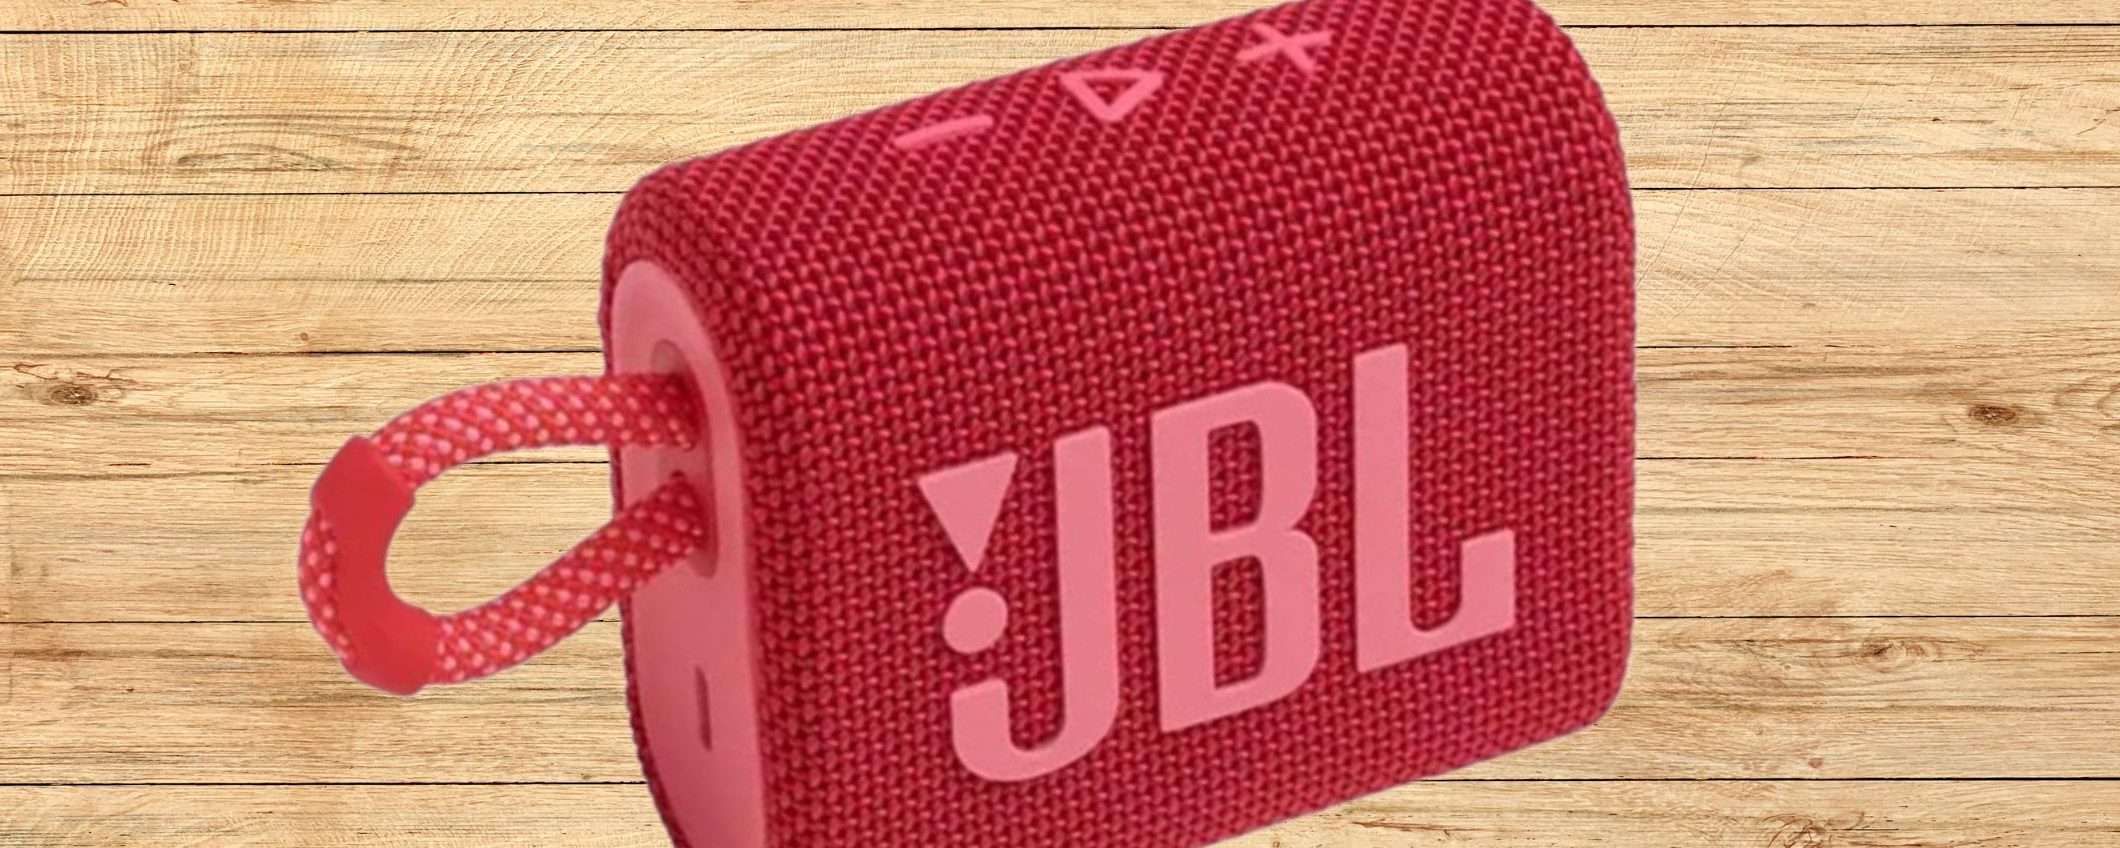 JBL GO 3 a 28€ su Amazon è un AFFARE ASSURDO: speaker wireless strepitoso